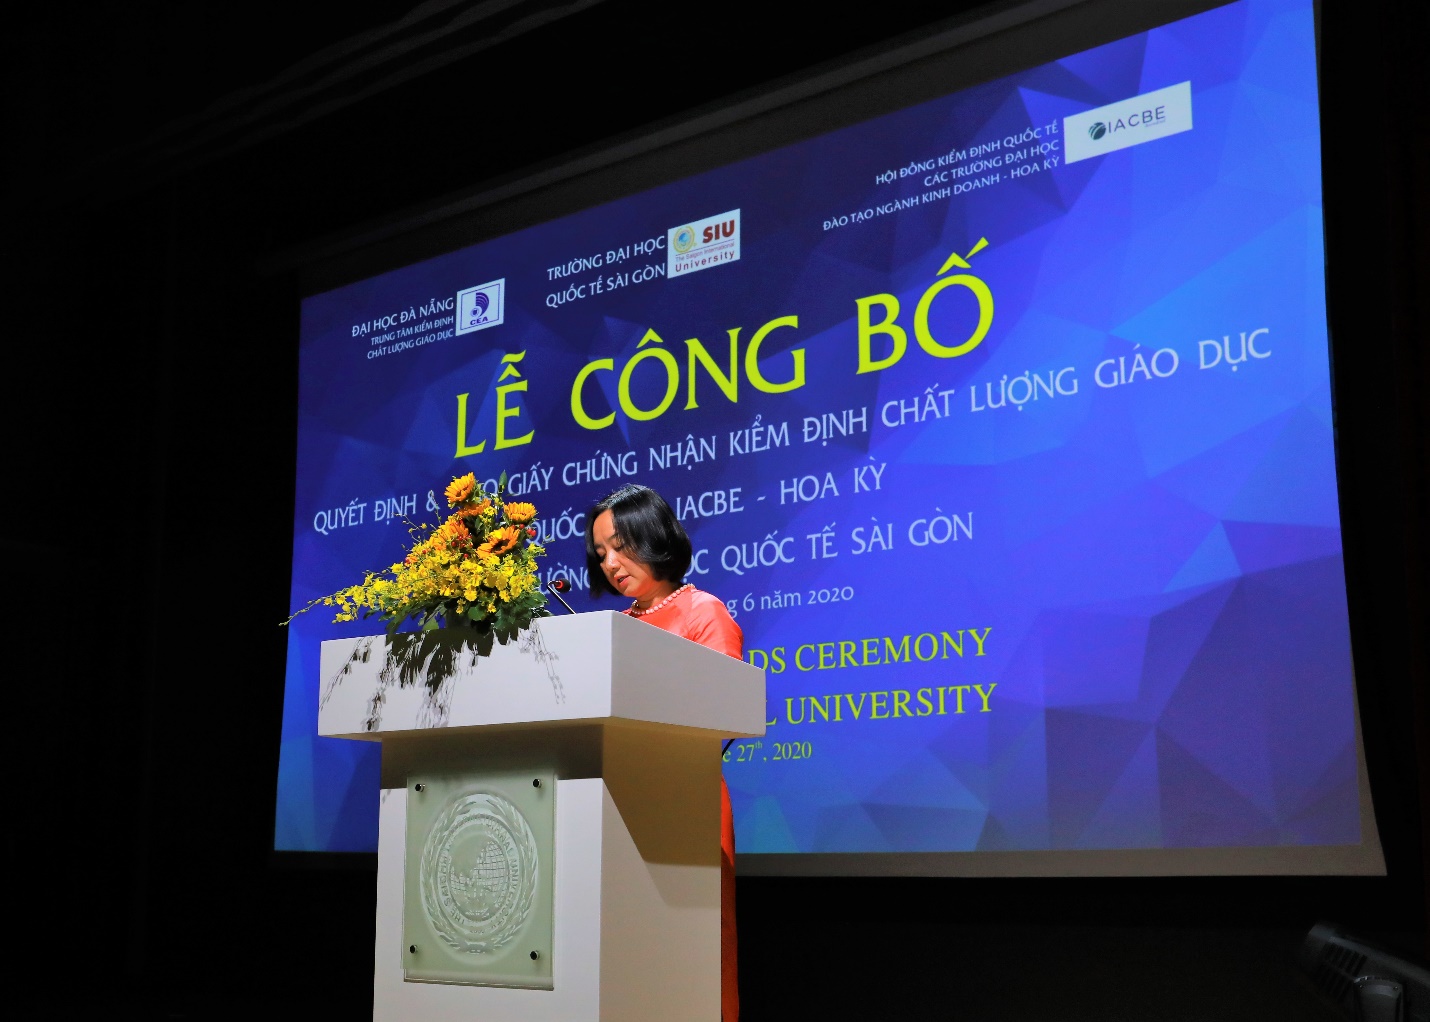 Đại học Quốc tế Sài Gòn đạt chuẩn kiểm định chất lượng giáo dục